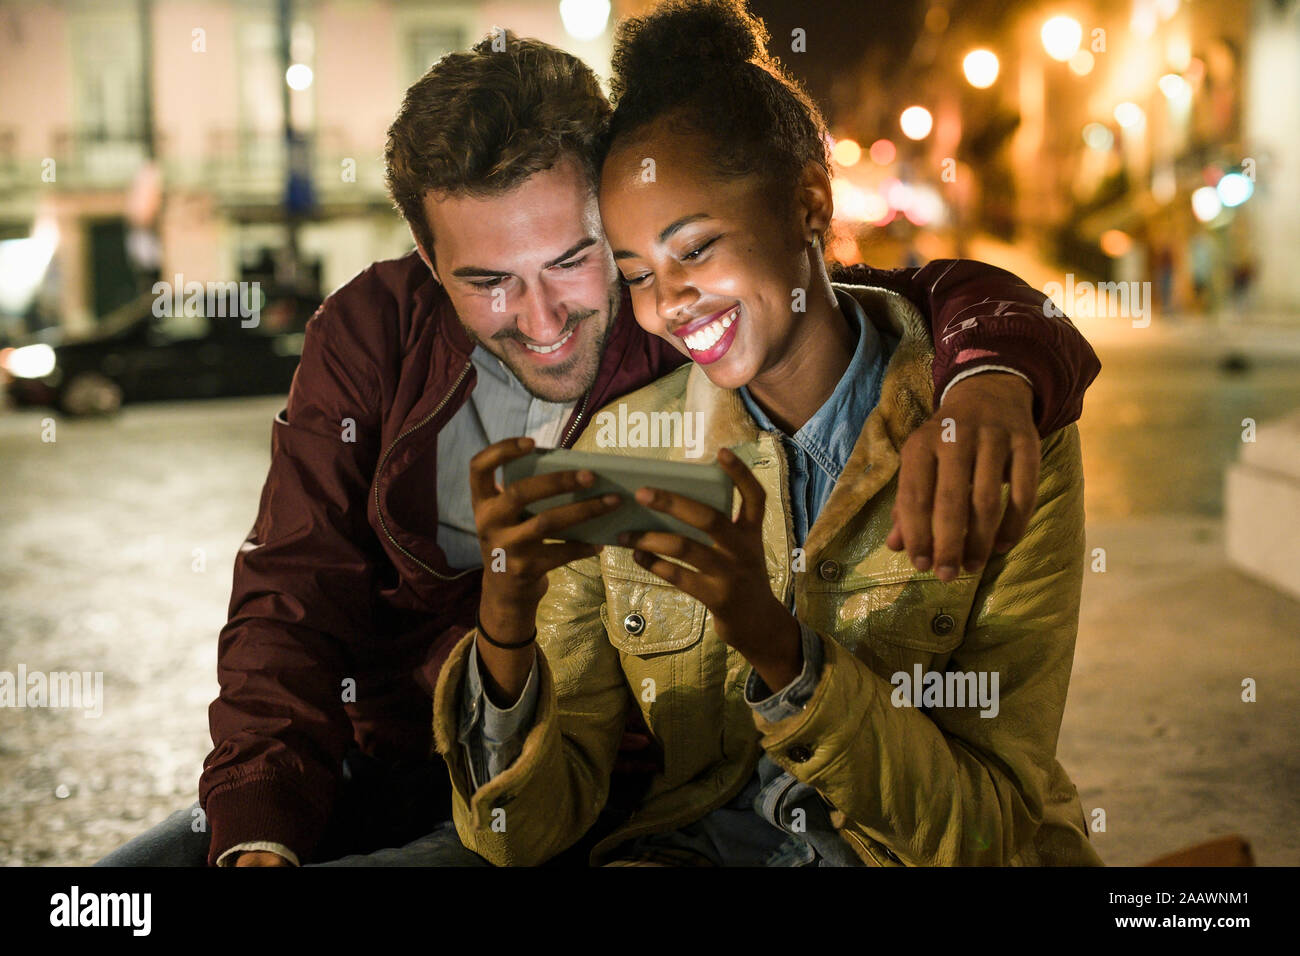 Ritratto di felice coppia giovane guardando insieme a smartphone di notte, Lisbona, Portogallo Foto Stock